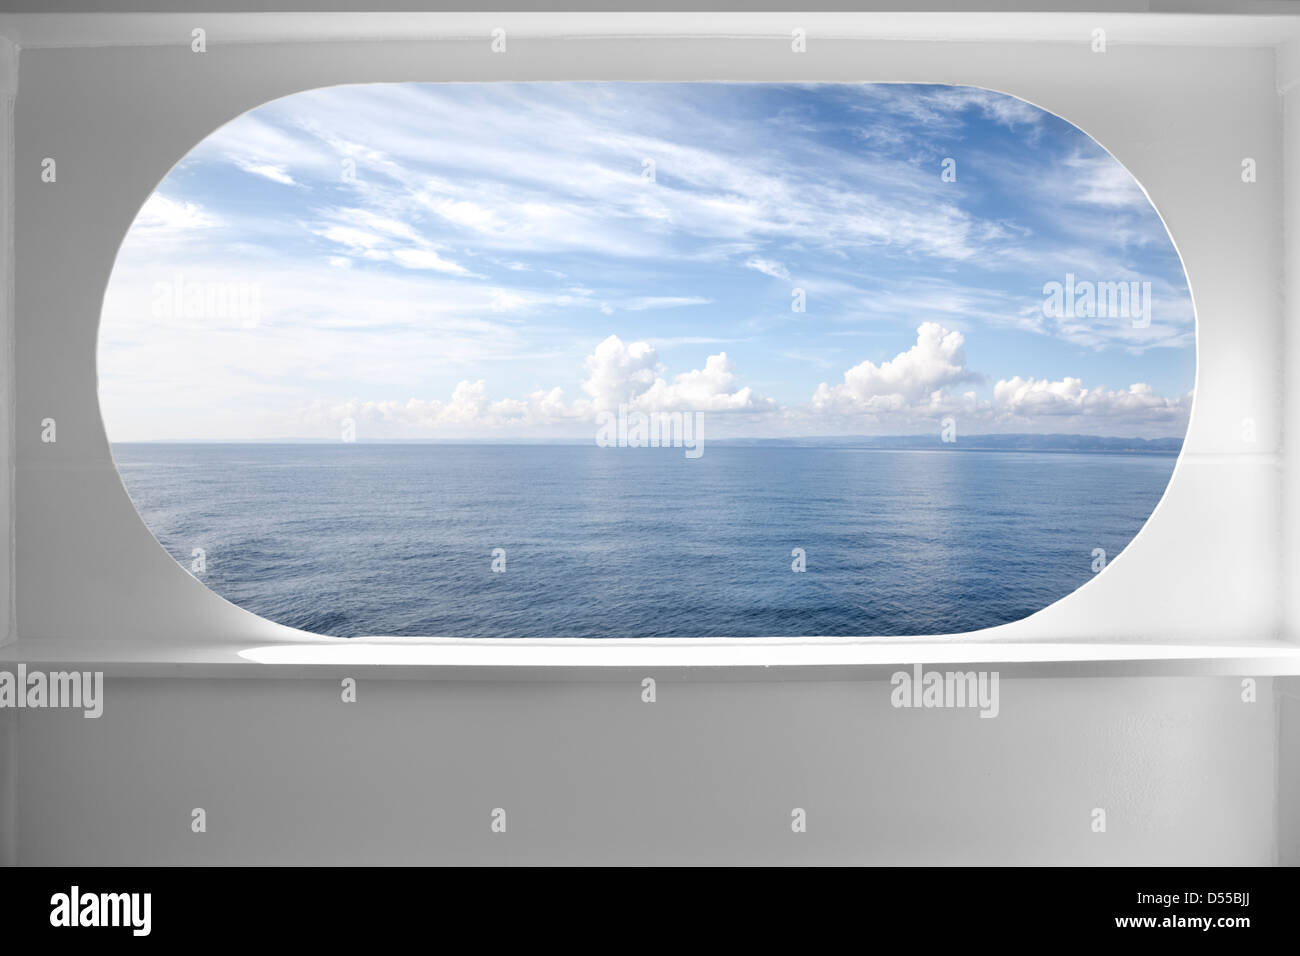 Pont de bateau avec une fenêtre Vue seascape Banque D'Images